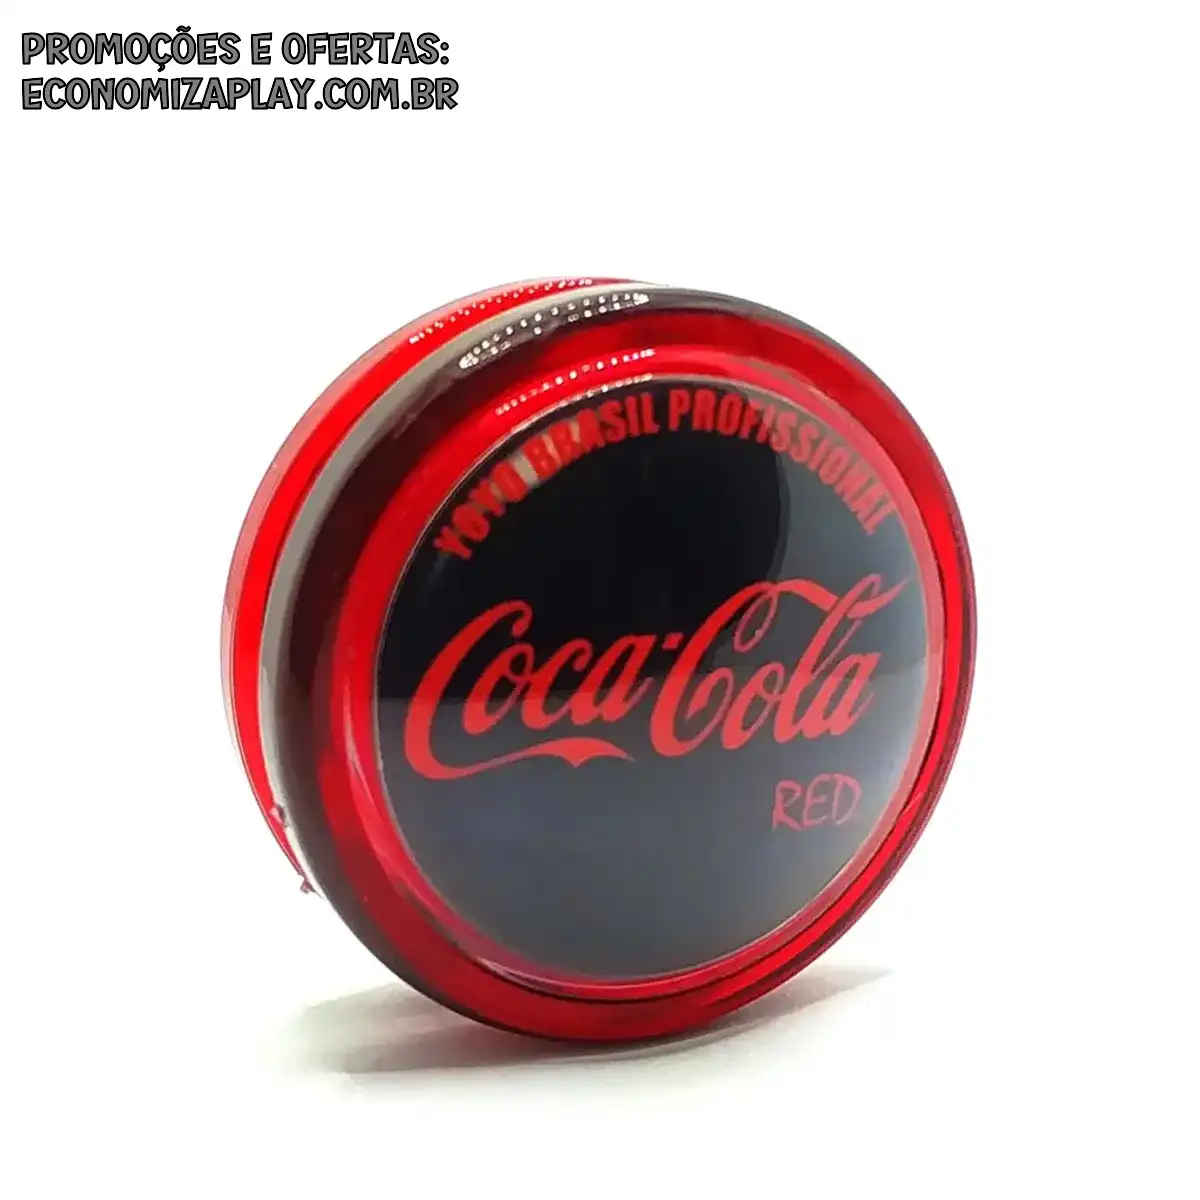 Yoyo York Profissional Coca Cola Fanta Sprite Originais Exclusivos 3 cordas Extras Ioio yoyo Io io